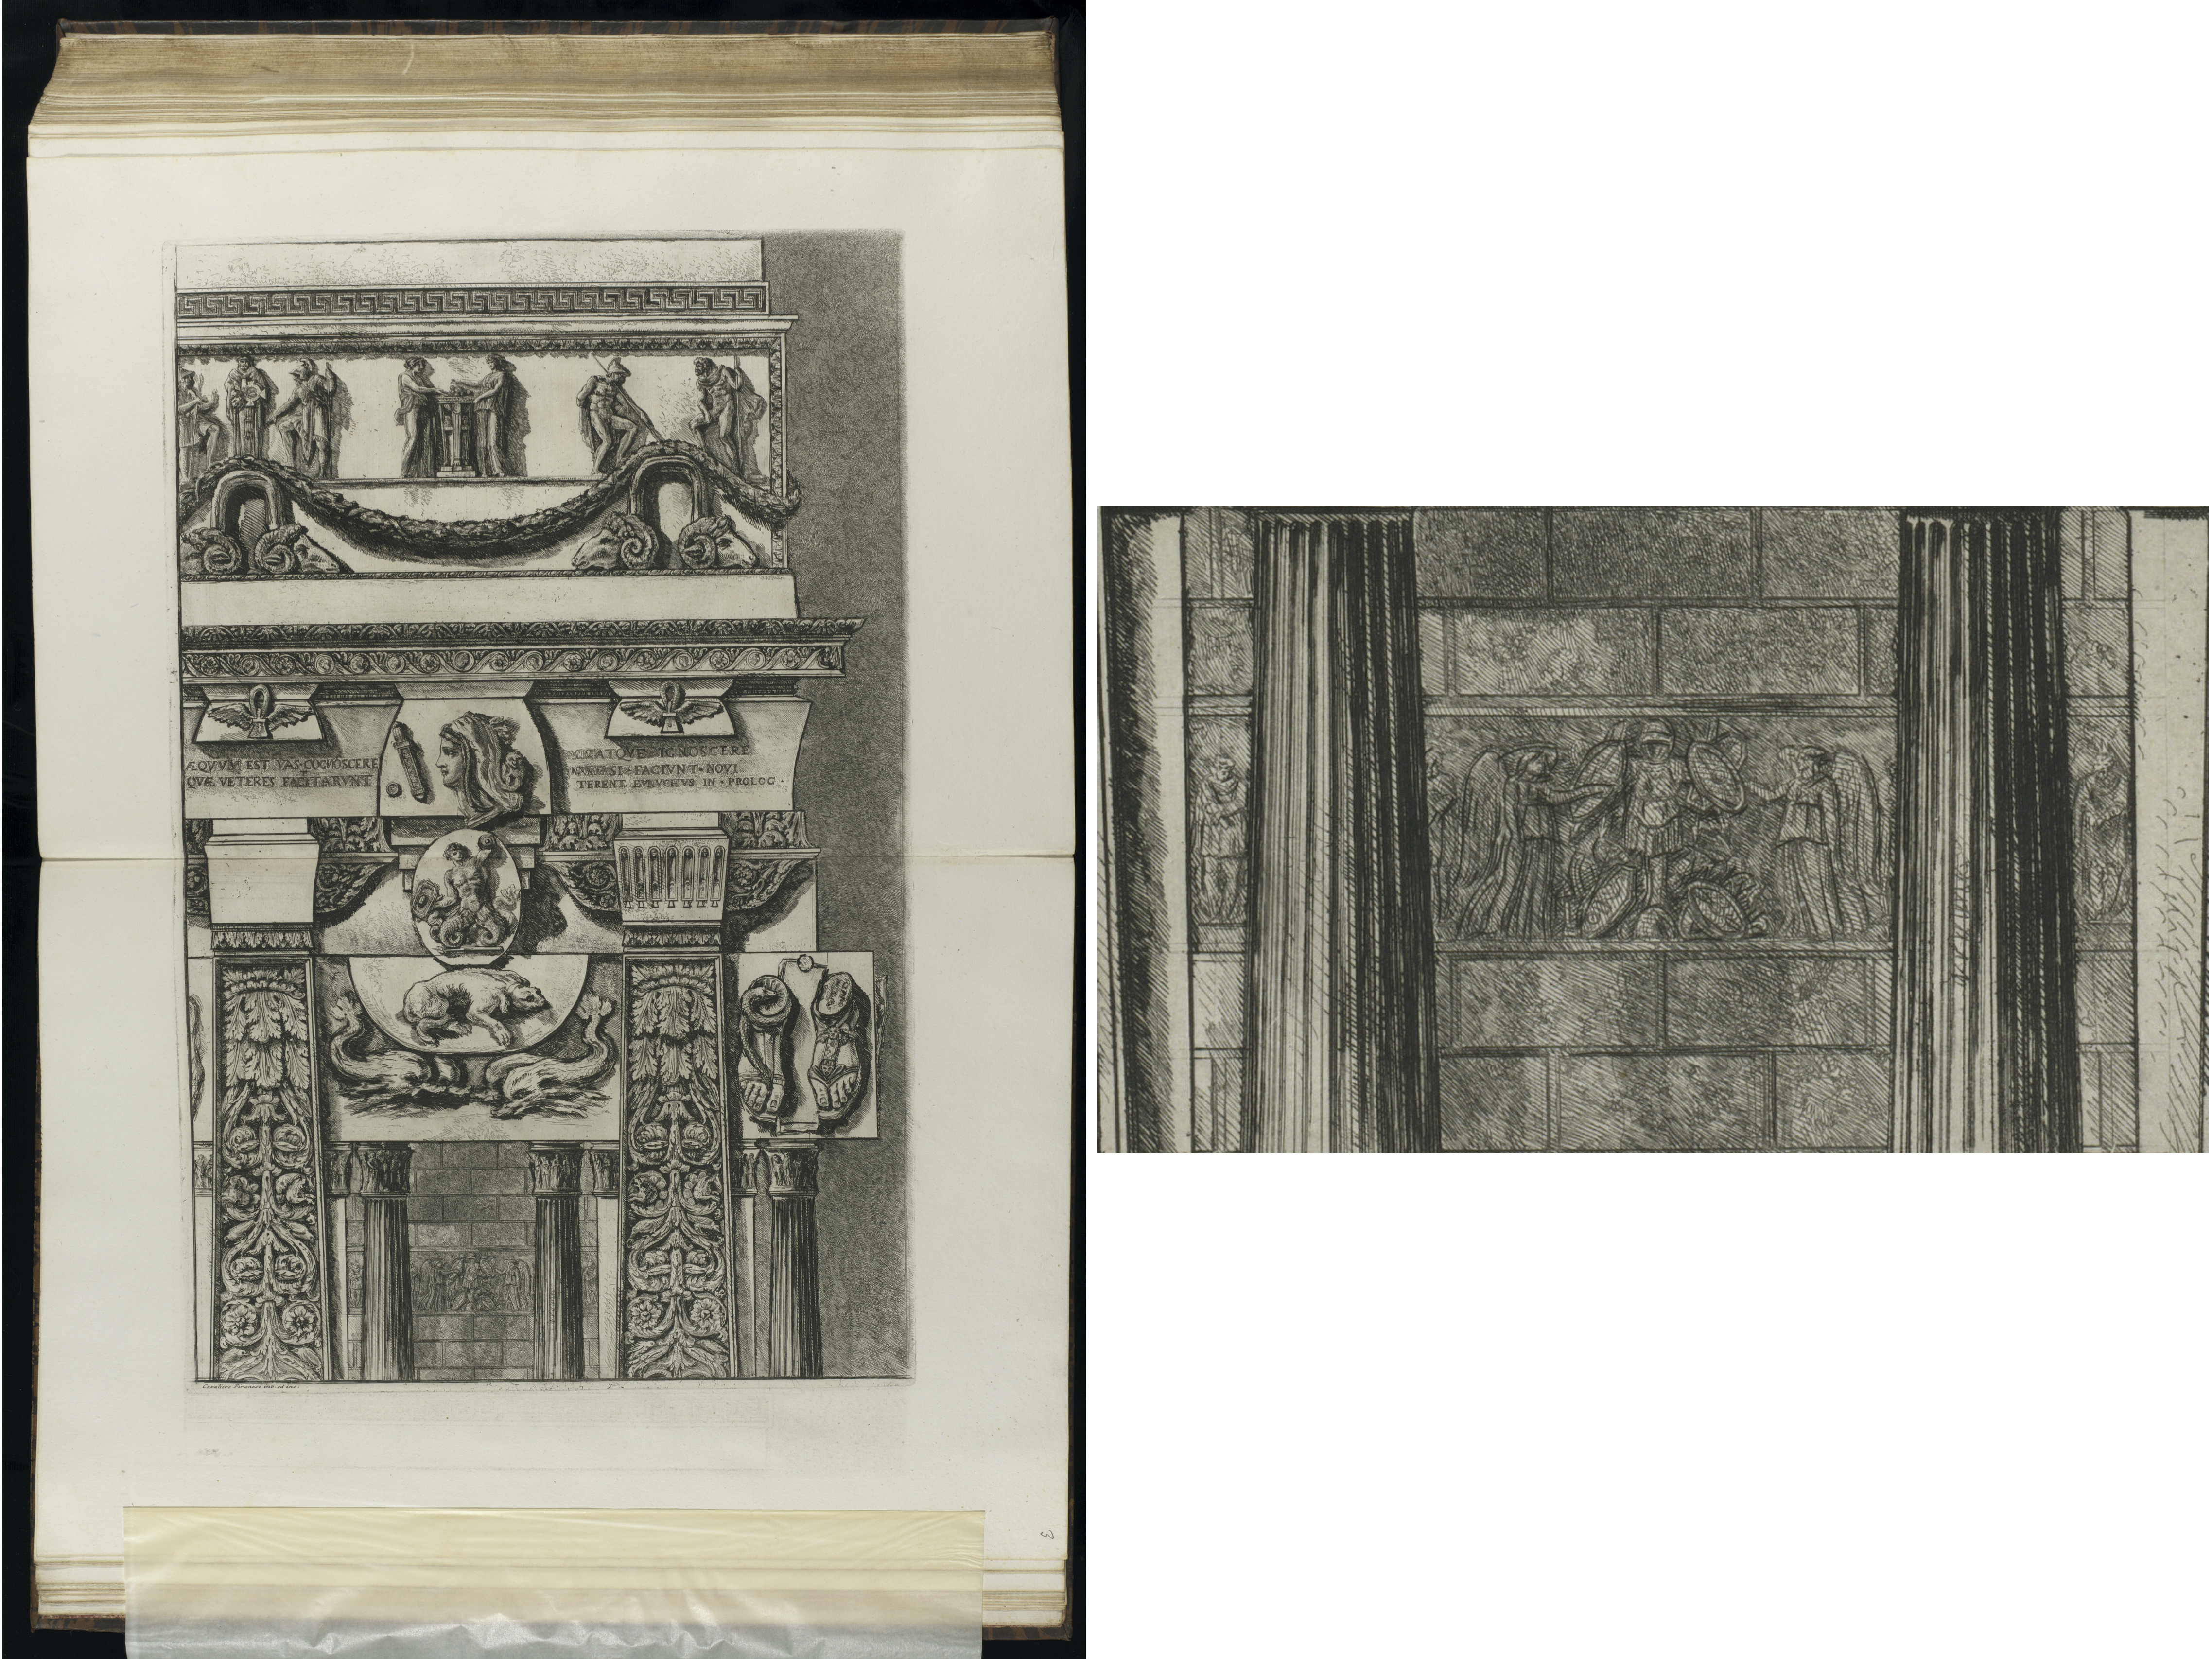 Radierung von Giovanni Battista Piranesi mit einer Zusammenstellung von Motiven alter Kulturen. Ein Detail der Radierung ist in der Bildmontage vergrößert dargestellt. Es handelt sich um einen Abschnitt des Viktorien-Rophäen-Reliefs